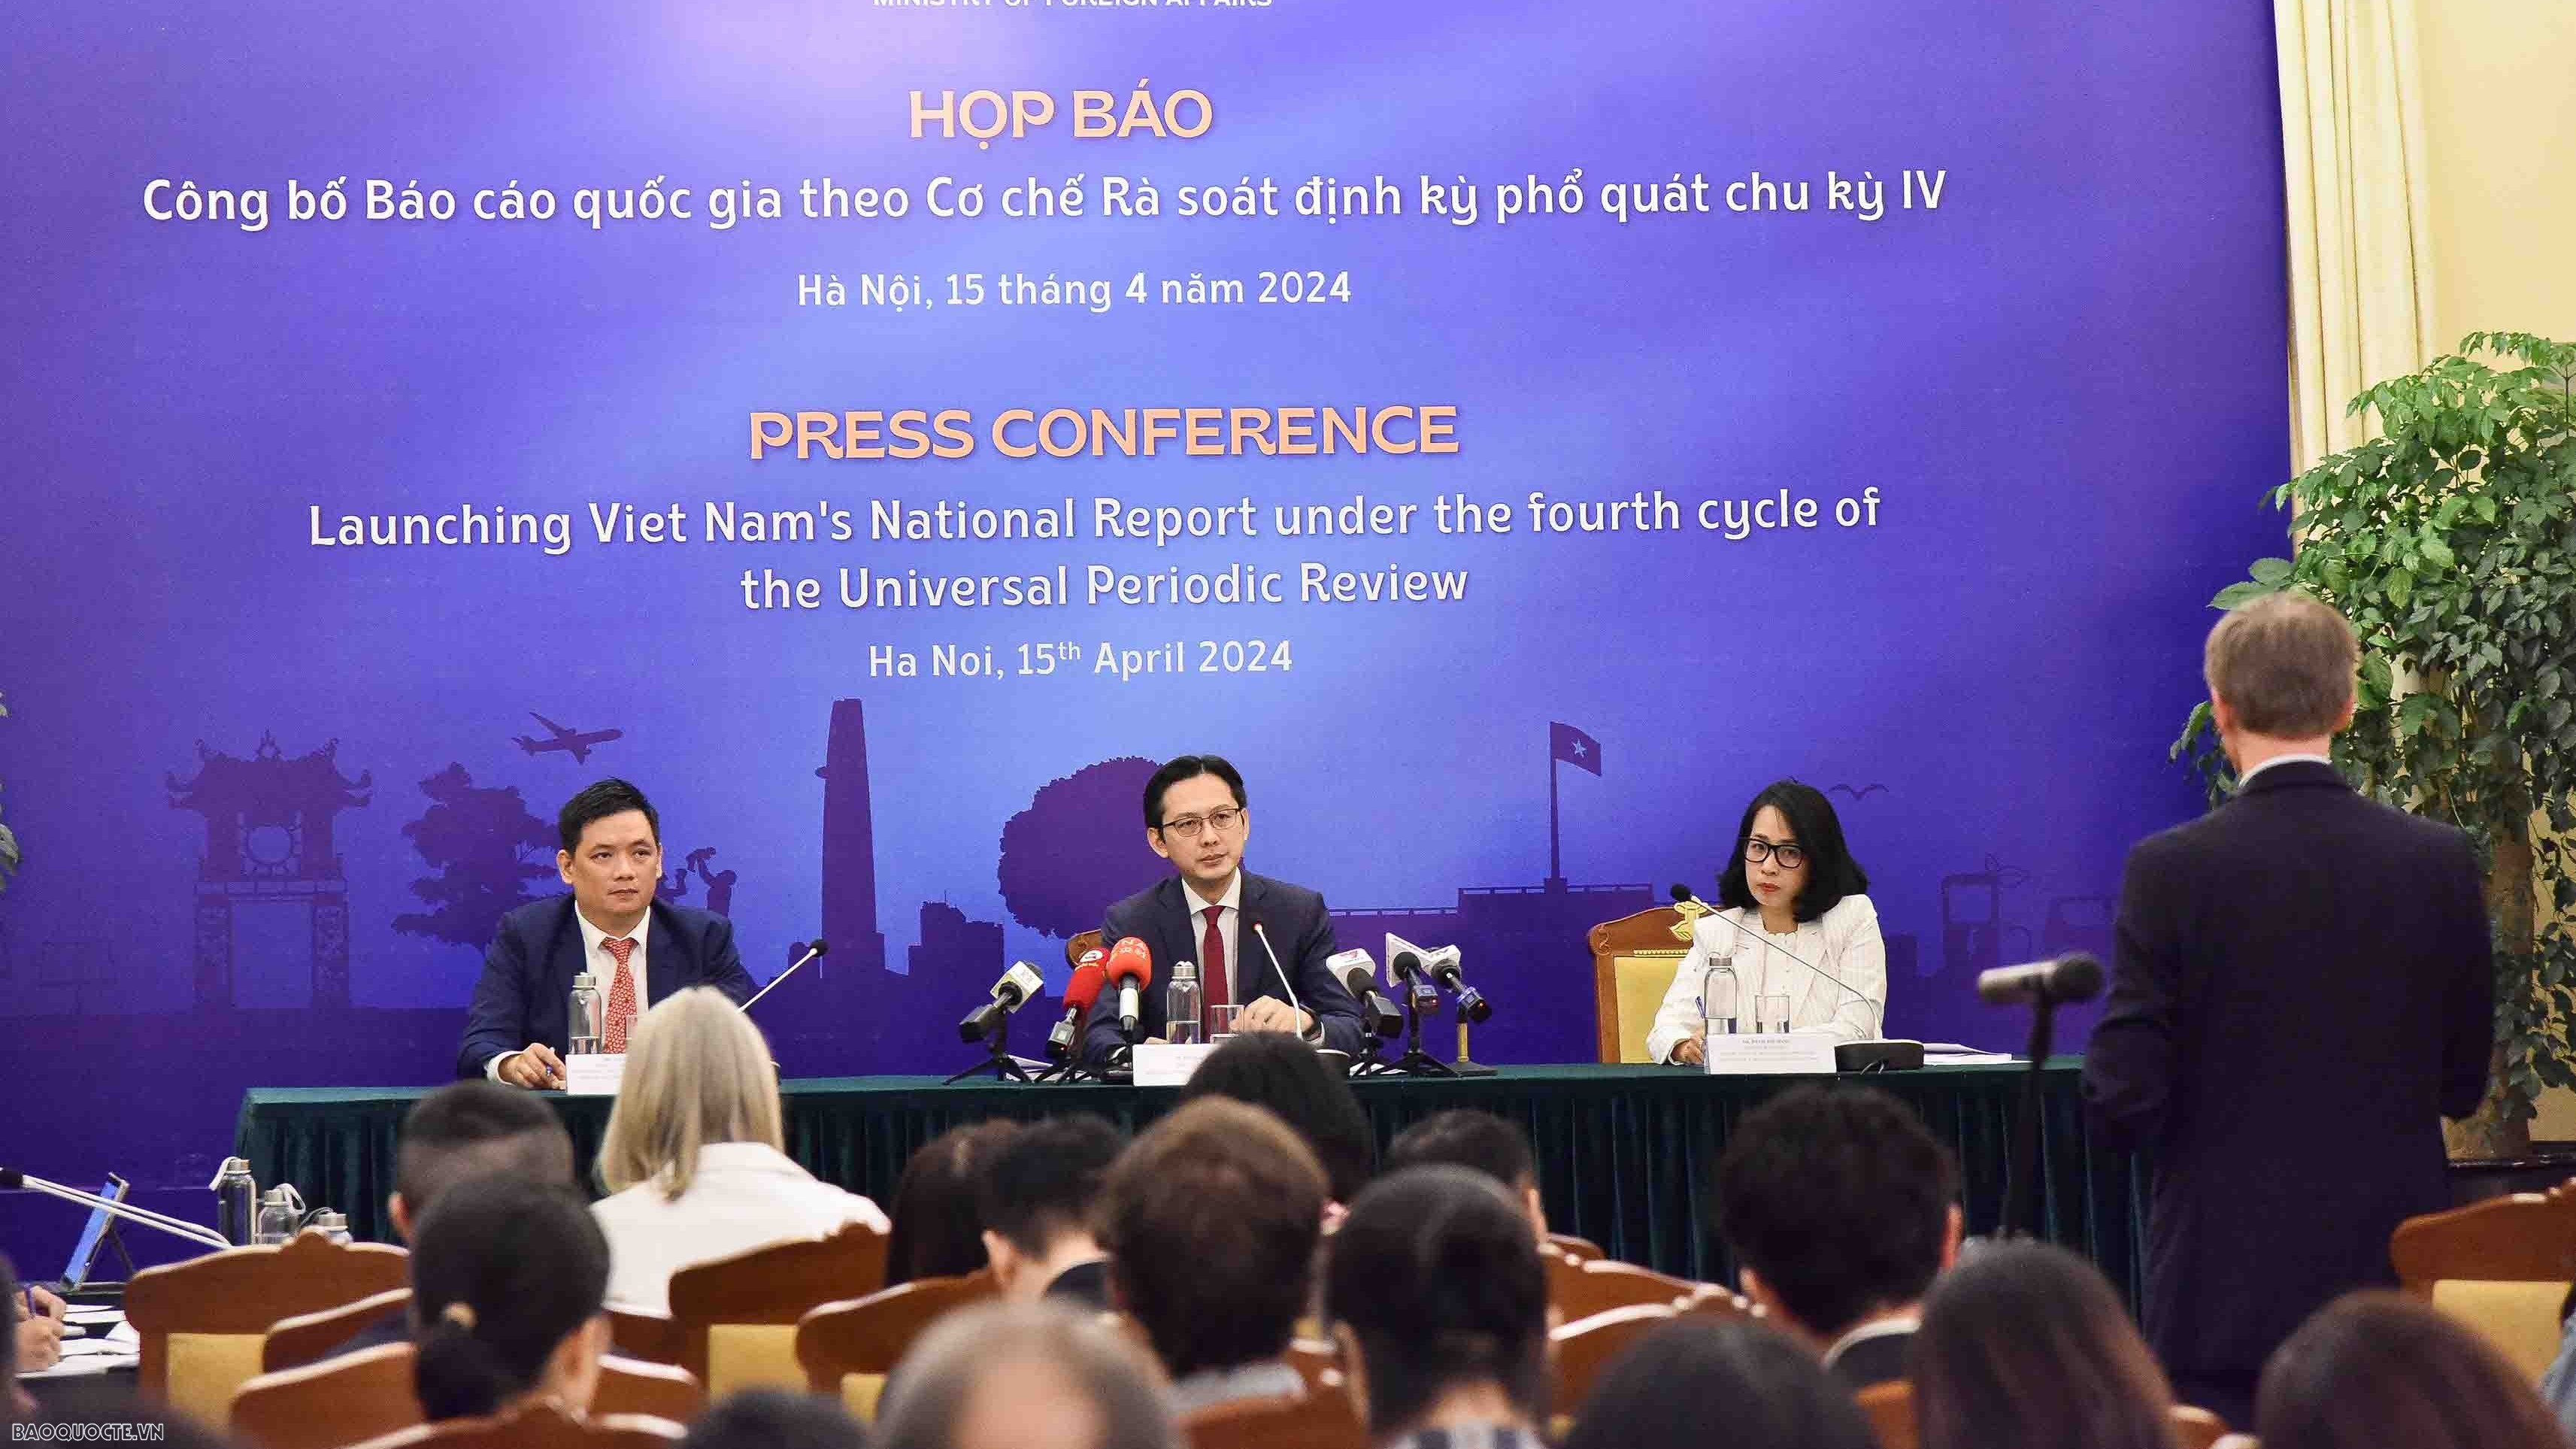 Việt Nam chuẩn bị đối thoại về Báo cáo quốc gia bảo vệ và thúc đẩy quyền con người theo cơ chế UPR chu kỳ IV